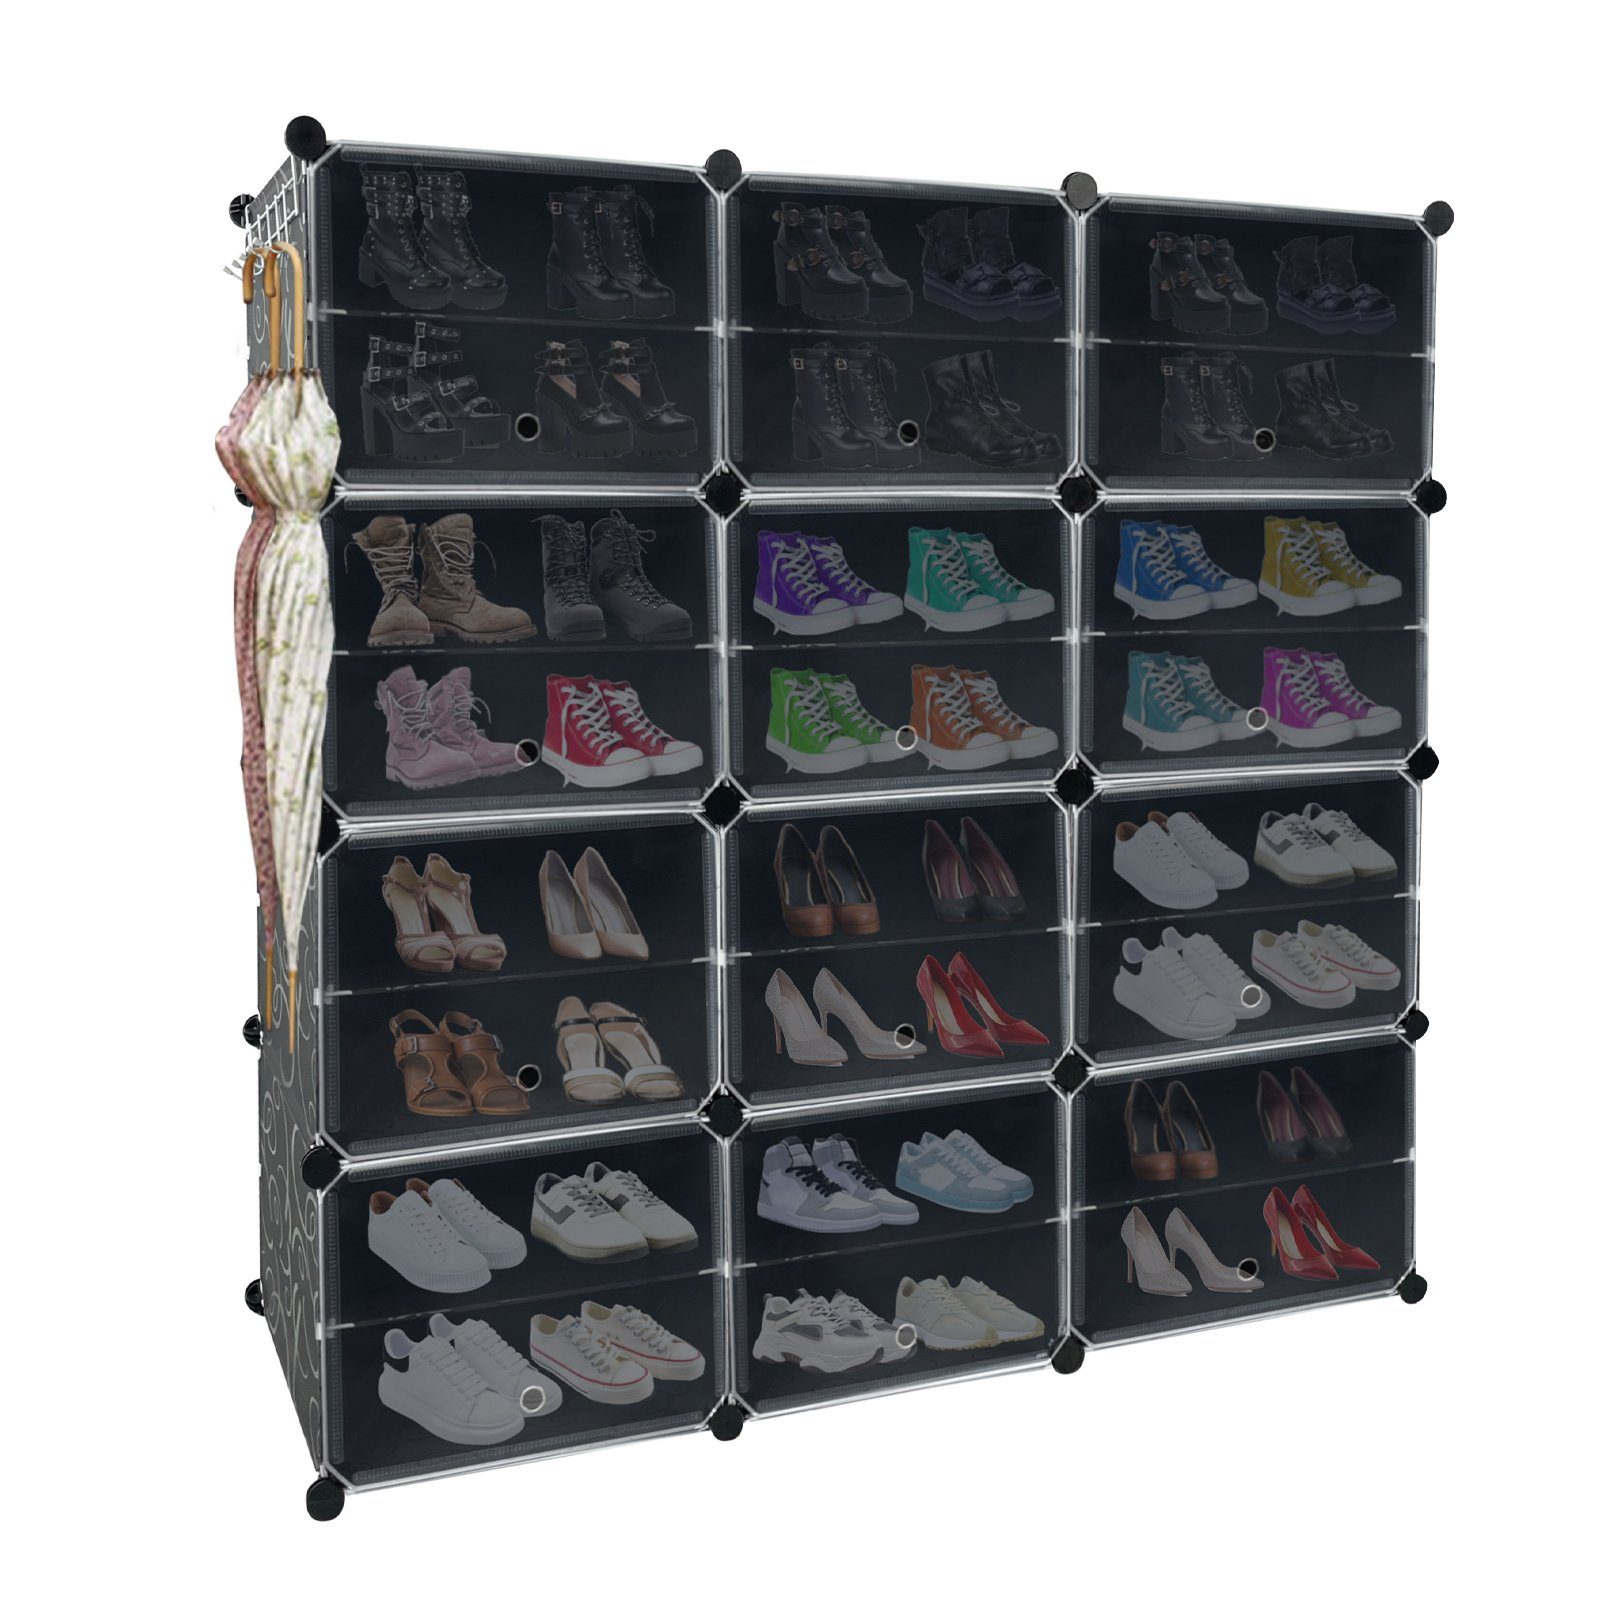 AUFUN Schuhregal mit 24 stapelbaren Schuhregale Schuhschrank, Steckregal, 6 Organizer stufiger Kunststoff Magnetverschluss Schuhboxen mit